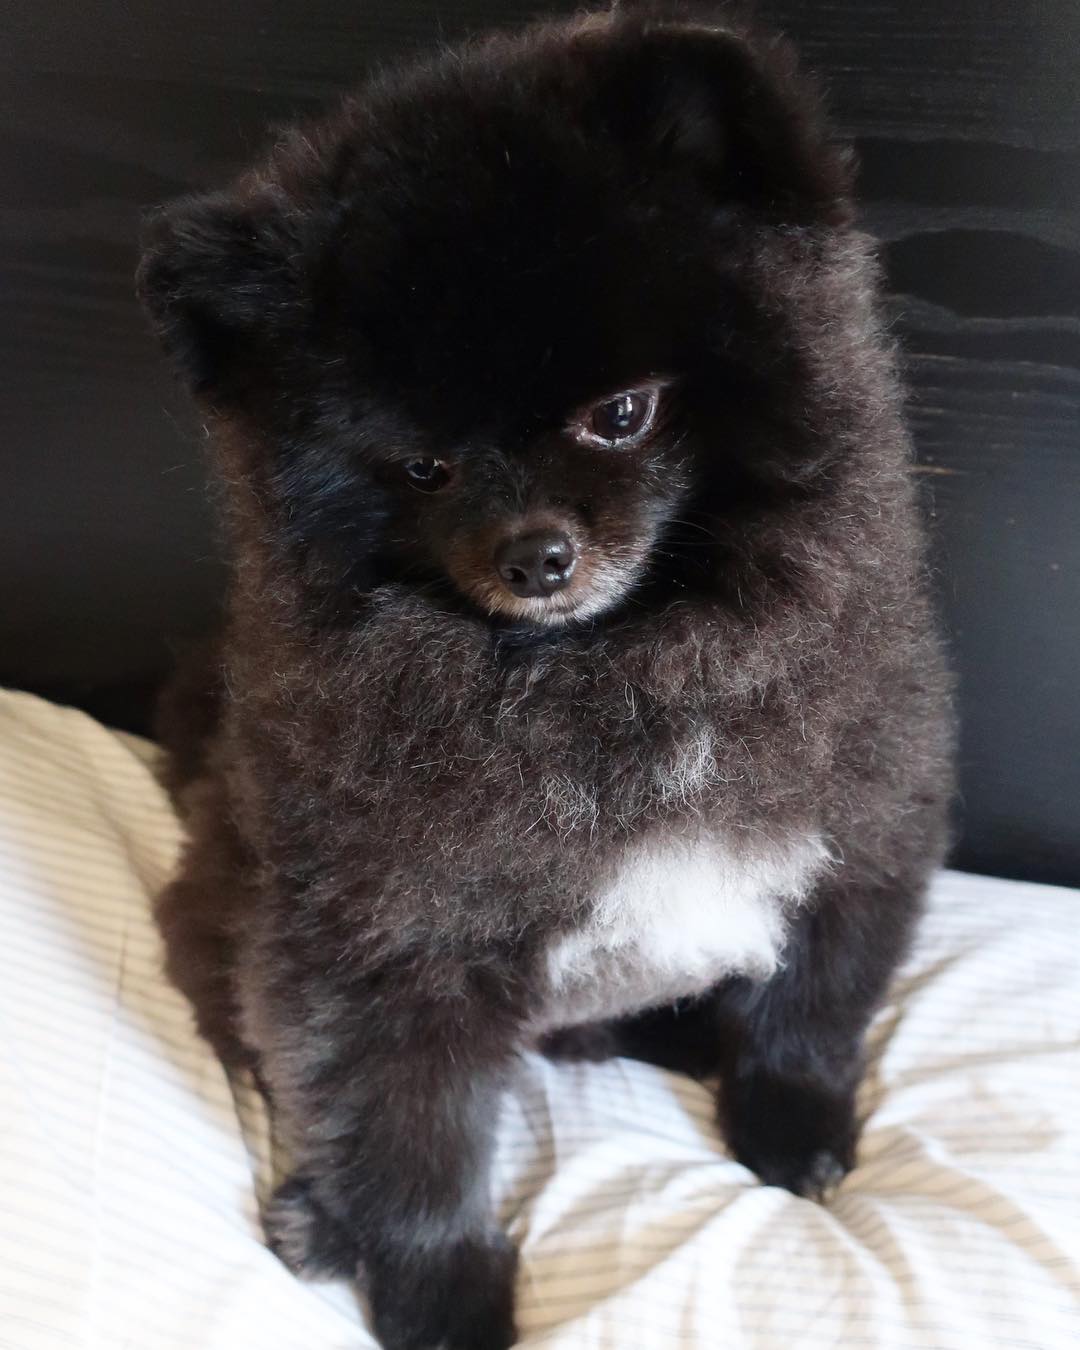 超可爱一只来自韩国名叫玉米的黑色小博美宠物狗狗